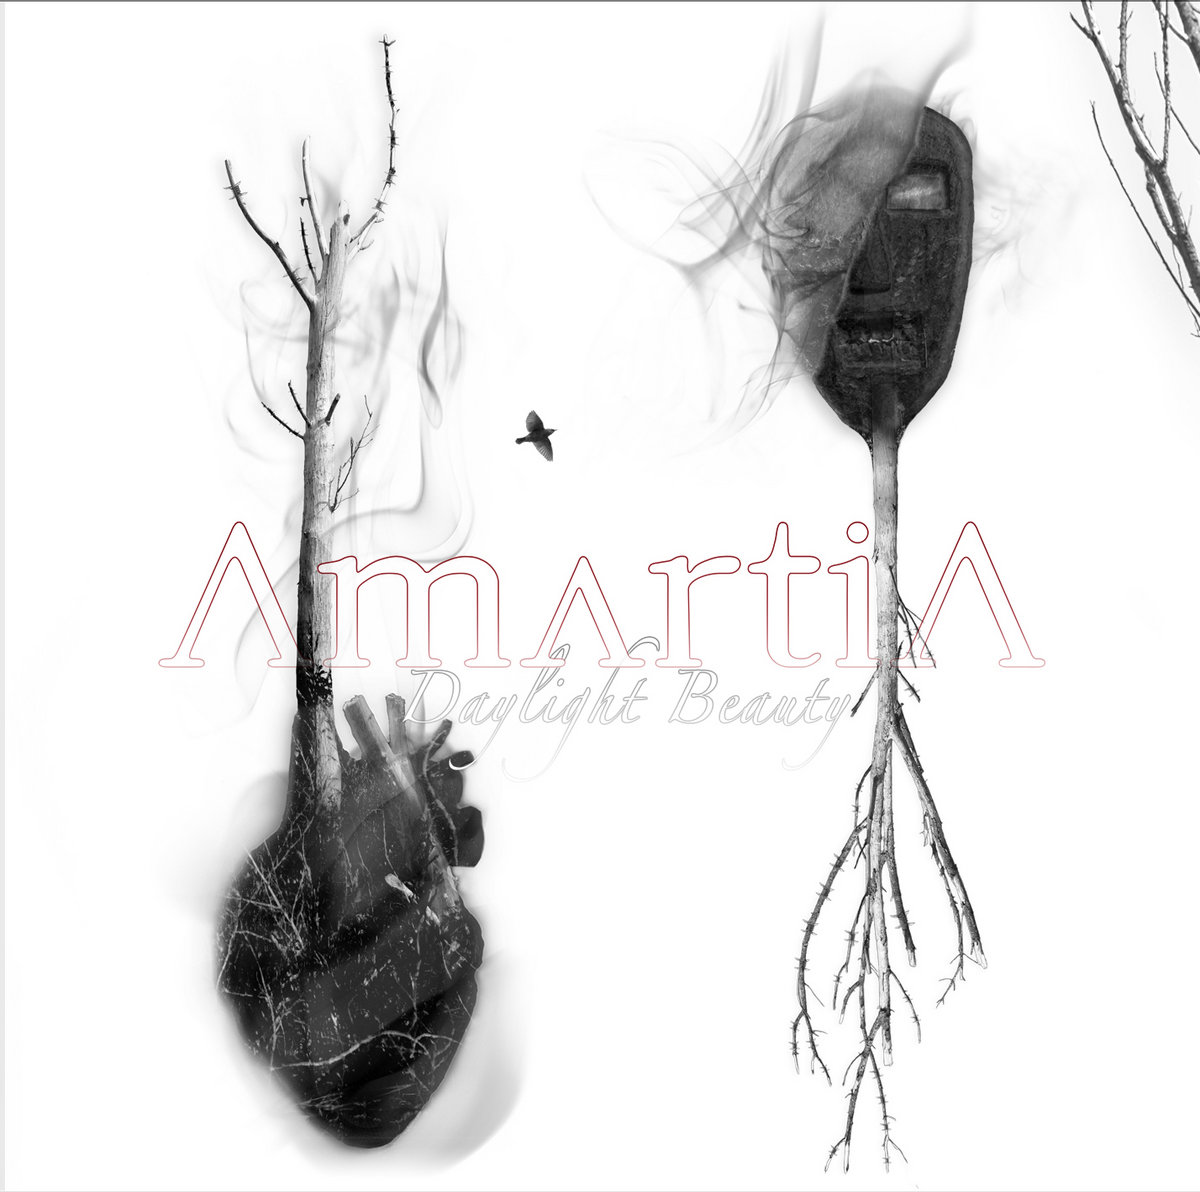 La nouvelle formule d'Amartia confirme l'essai avec ce Daylight Beauty, probablement l'un des albums les moins "bourrins" du combo, mais toujours aussi inspirè. C'est ègalement leur album le plus lumineux, et cela leur va très bien.